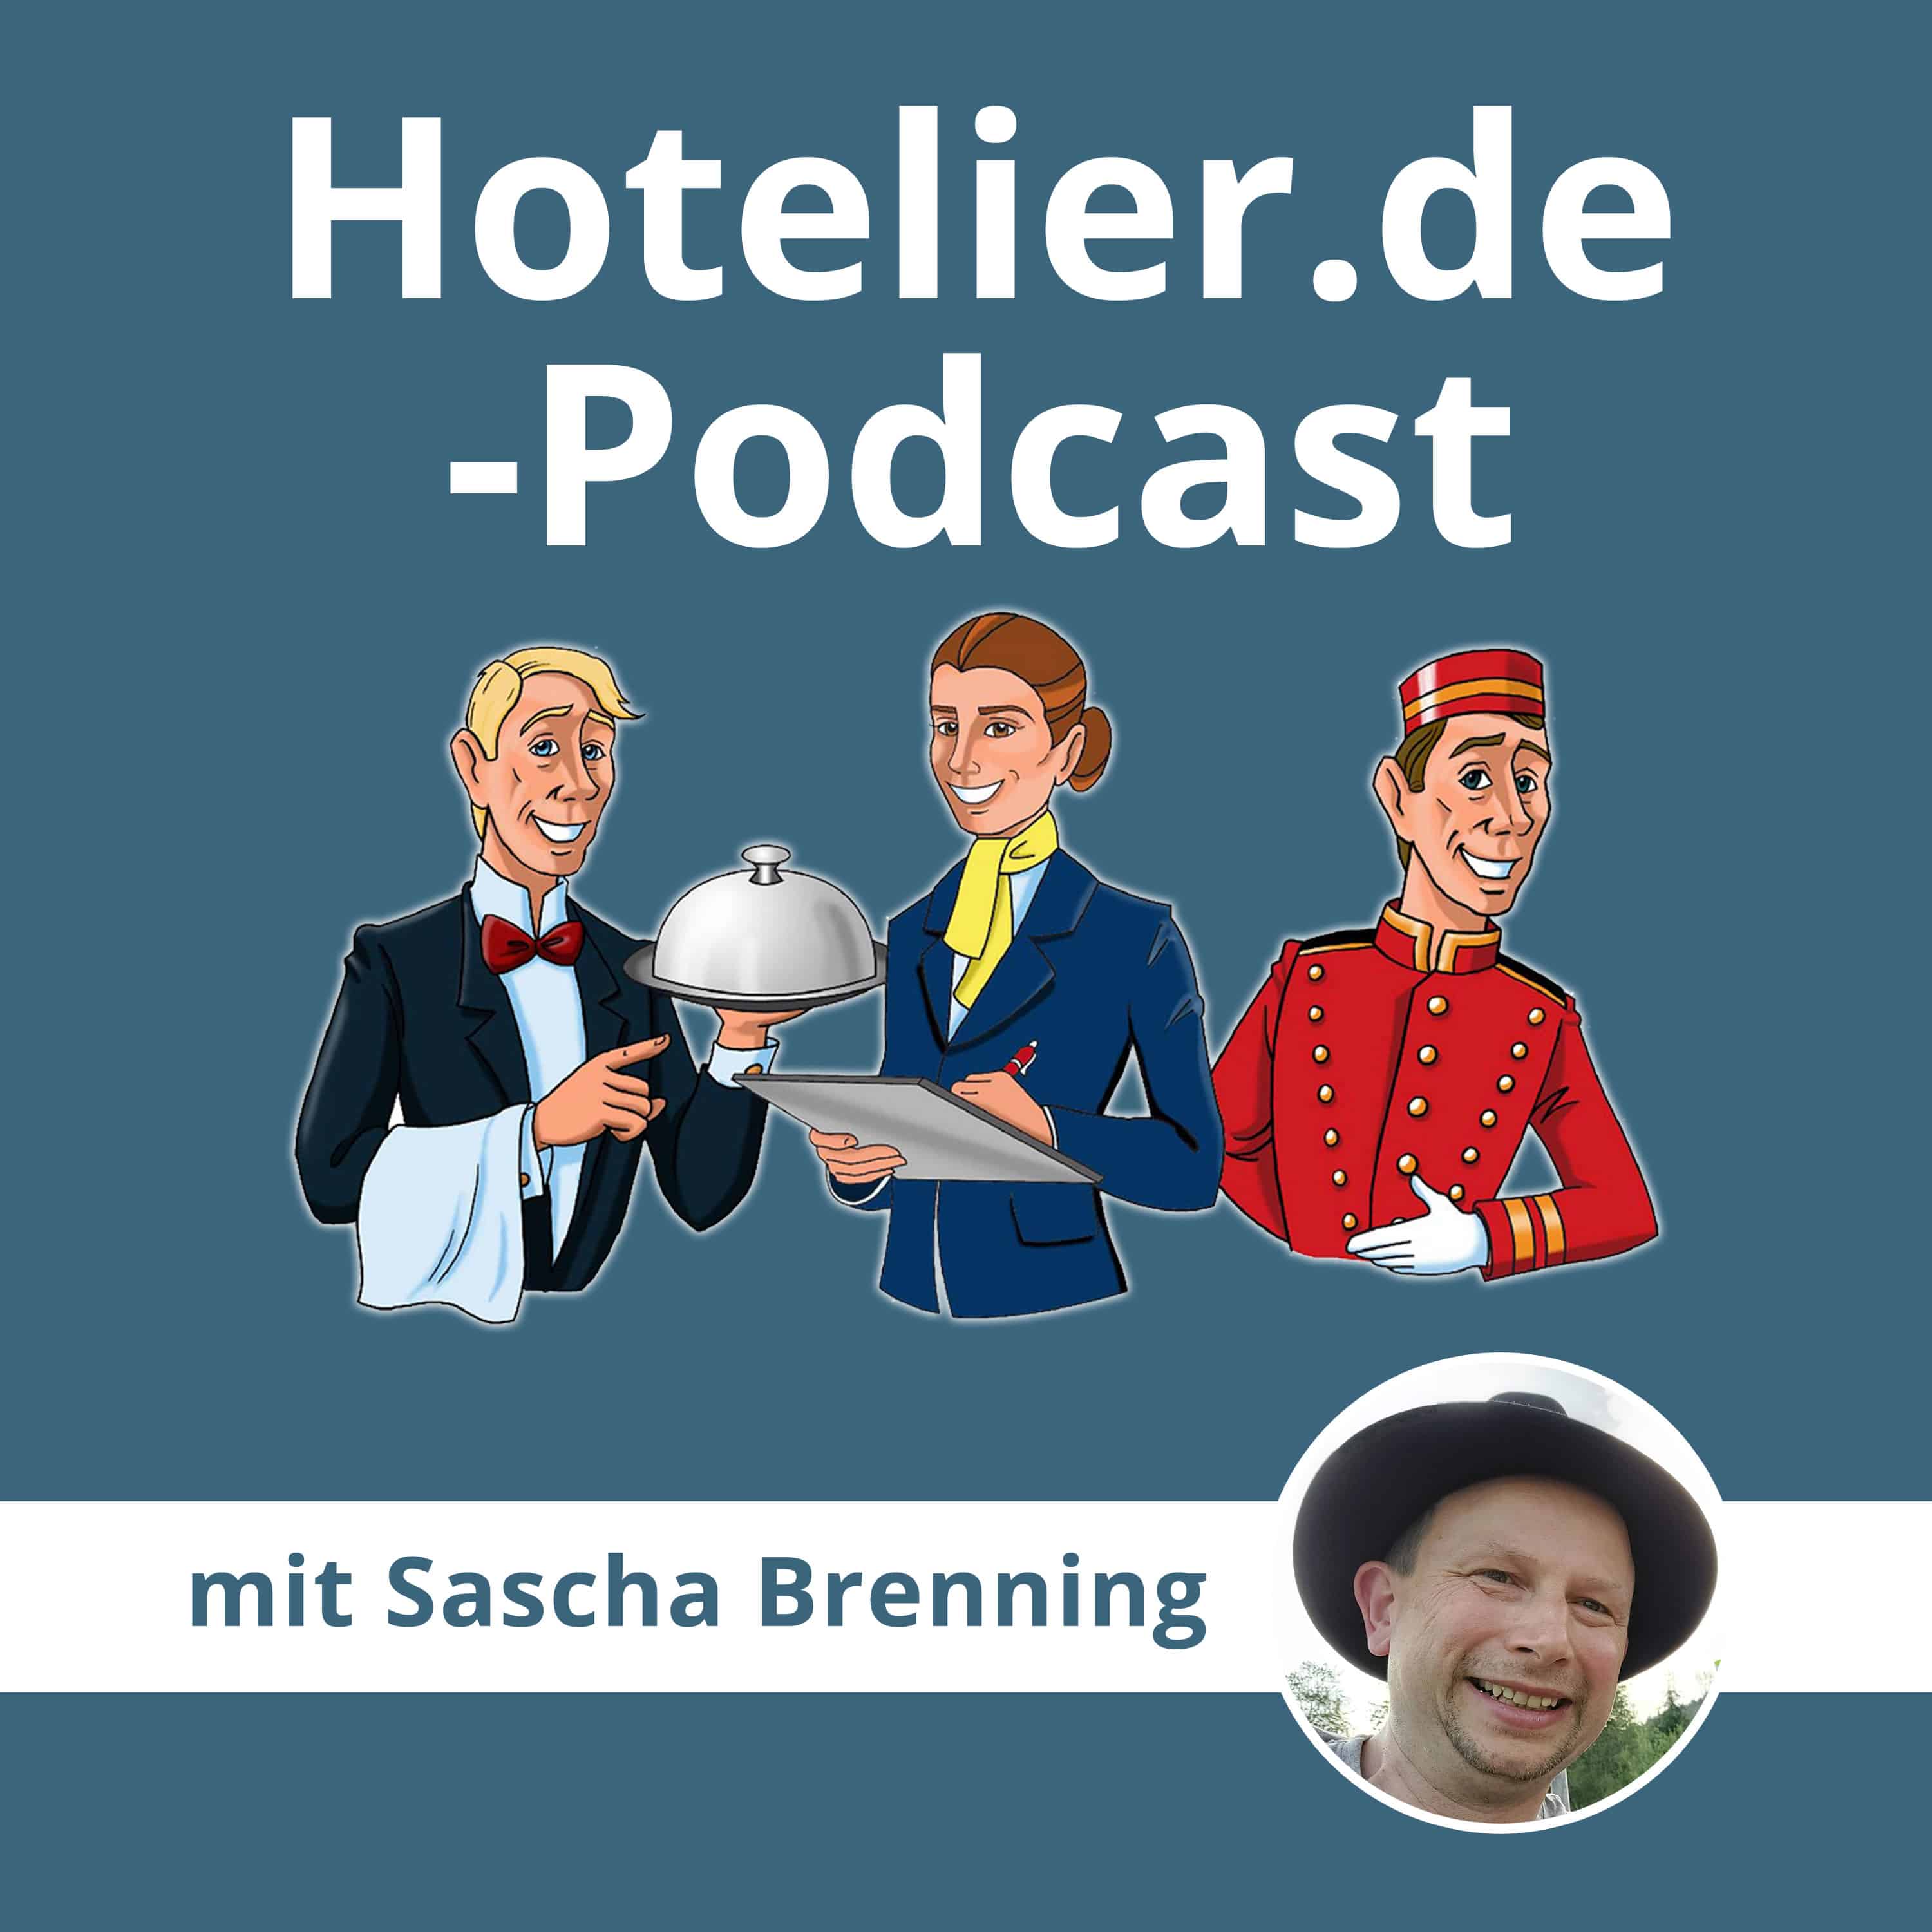 Hotelier.de - der Podcast für Hotels, Unterkünfte und Tourismus